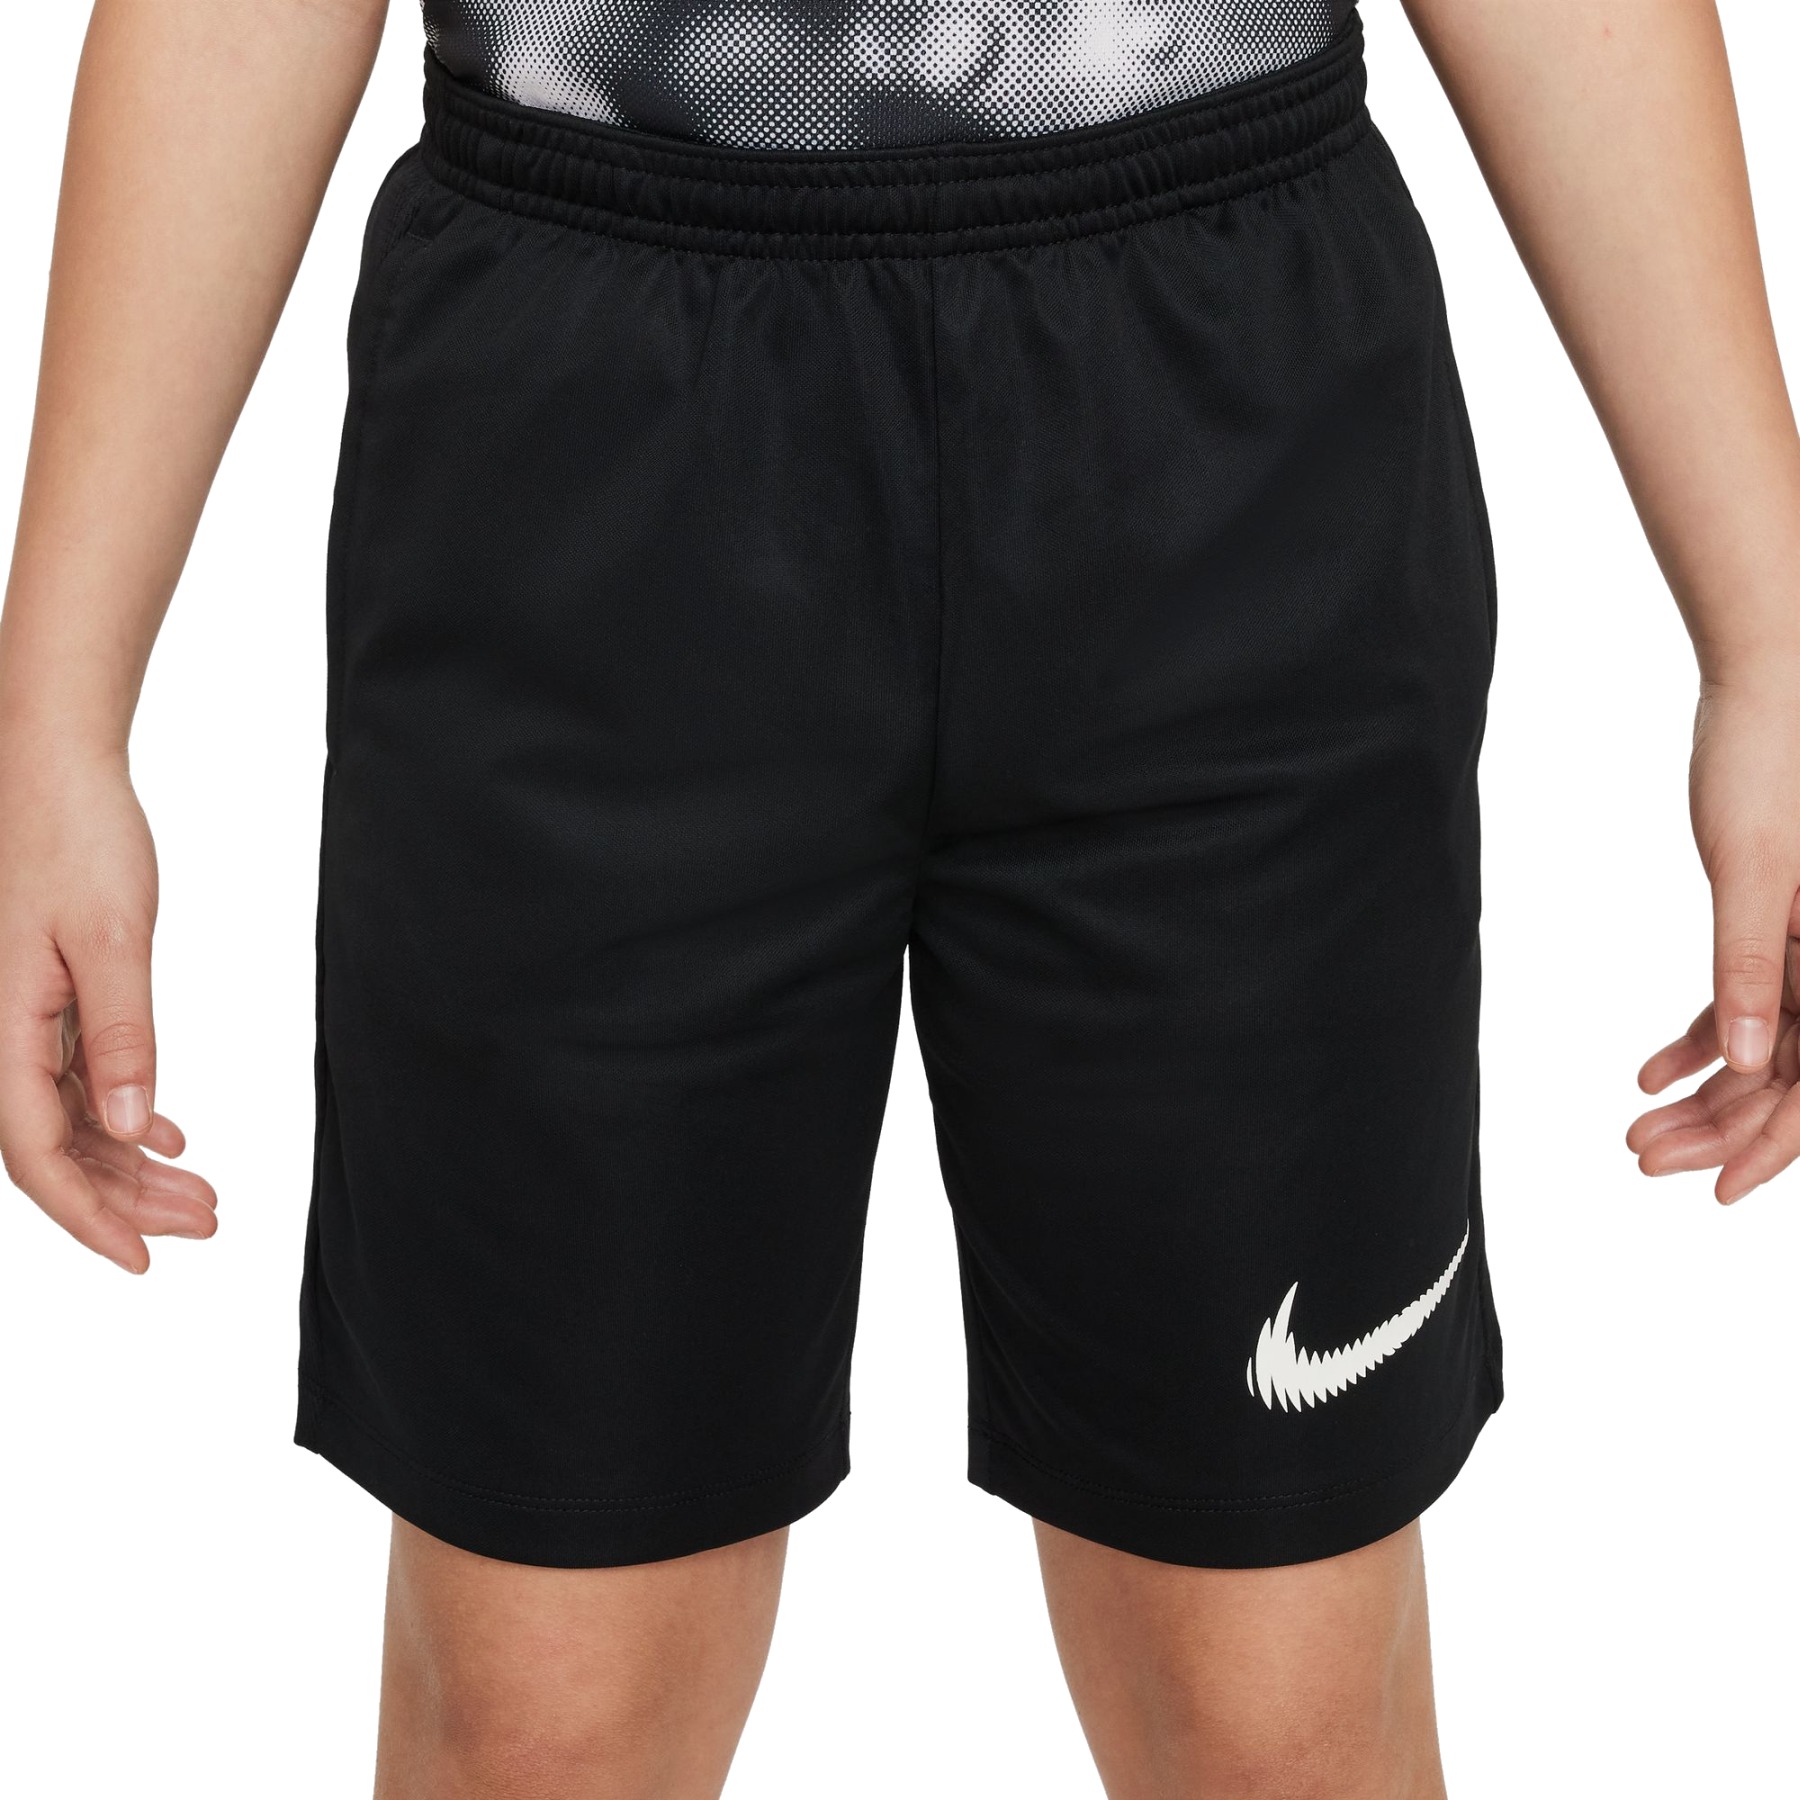 Produktbild von Nike Dri-FIT Trophy23 Basketballshorts für Kinder - schwarz/weiß FD3959-010